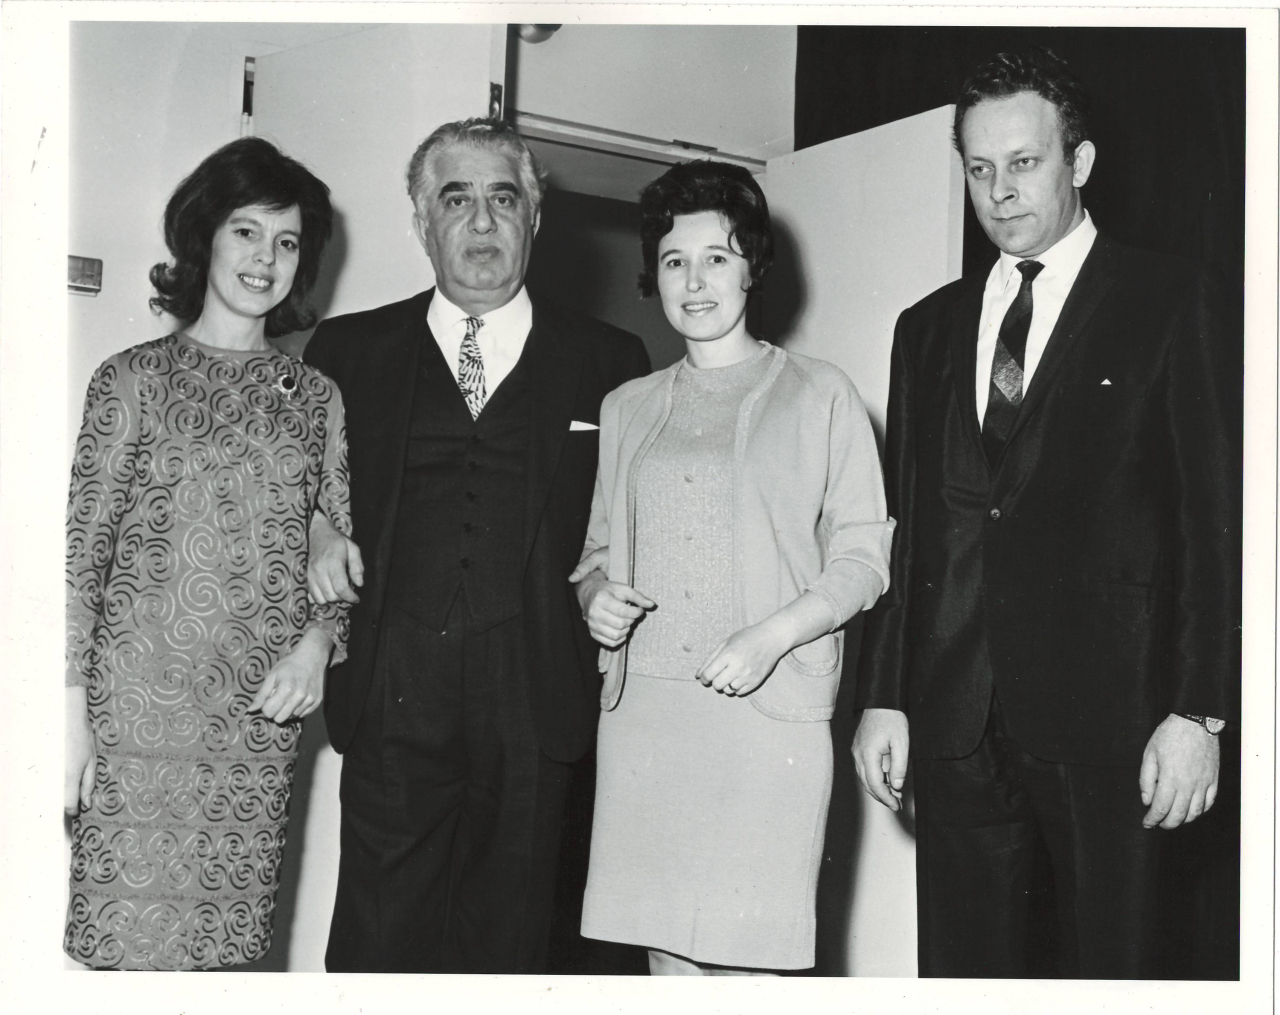 Լուսանկար.Ա. Խաչատրյանը ՄԱԿ-ին առընթեր սովետական ներկայացուցչության 3-րդ քարտուղար Վ. Իվանովի և ԱՄՆ-ի հայ համայանքի որոշ ներկայացուցիչների հետ